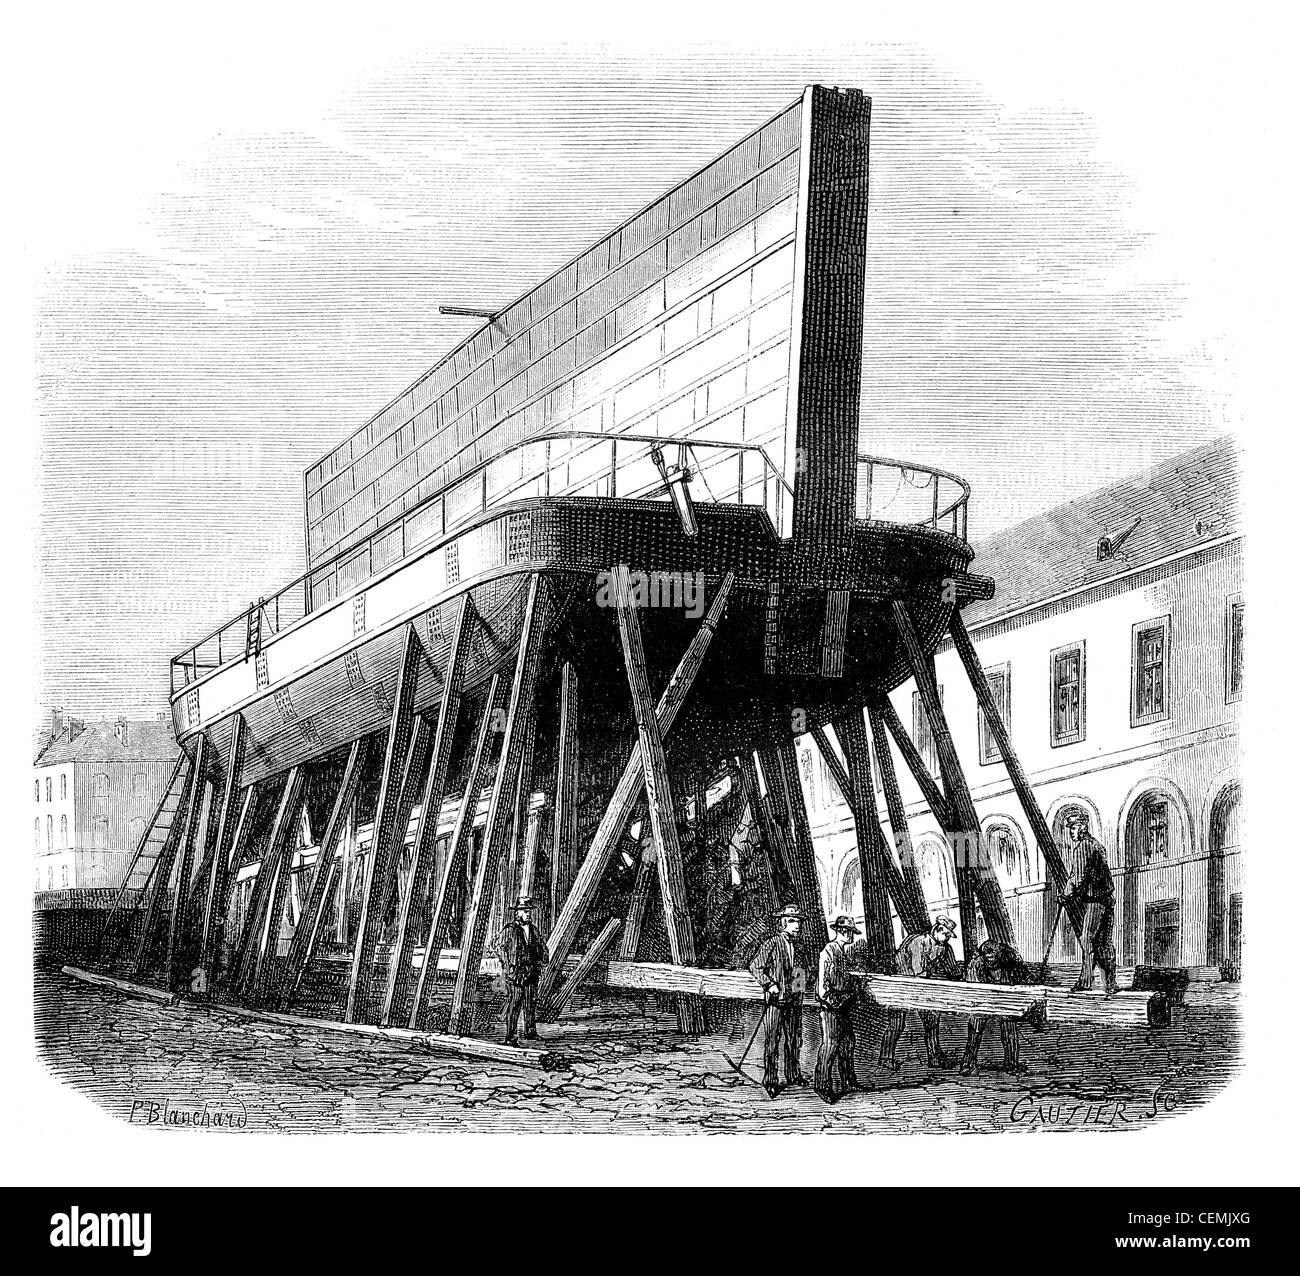 Hafen von Brest. -Boot-Eisernes Tor (1). -Zeichnung Ph.d Blanchard, graviert Vintage Illustration. Magasin Pittoresque 1875. Stockfoto